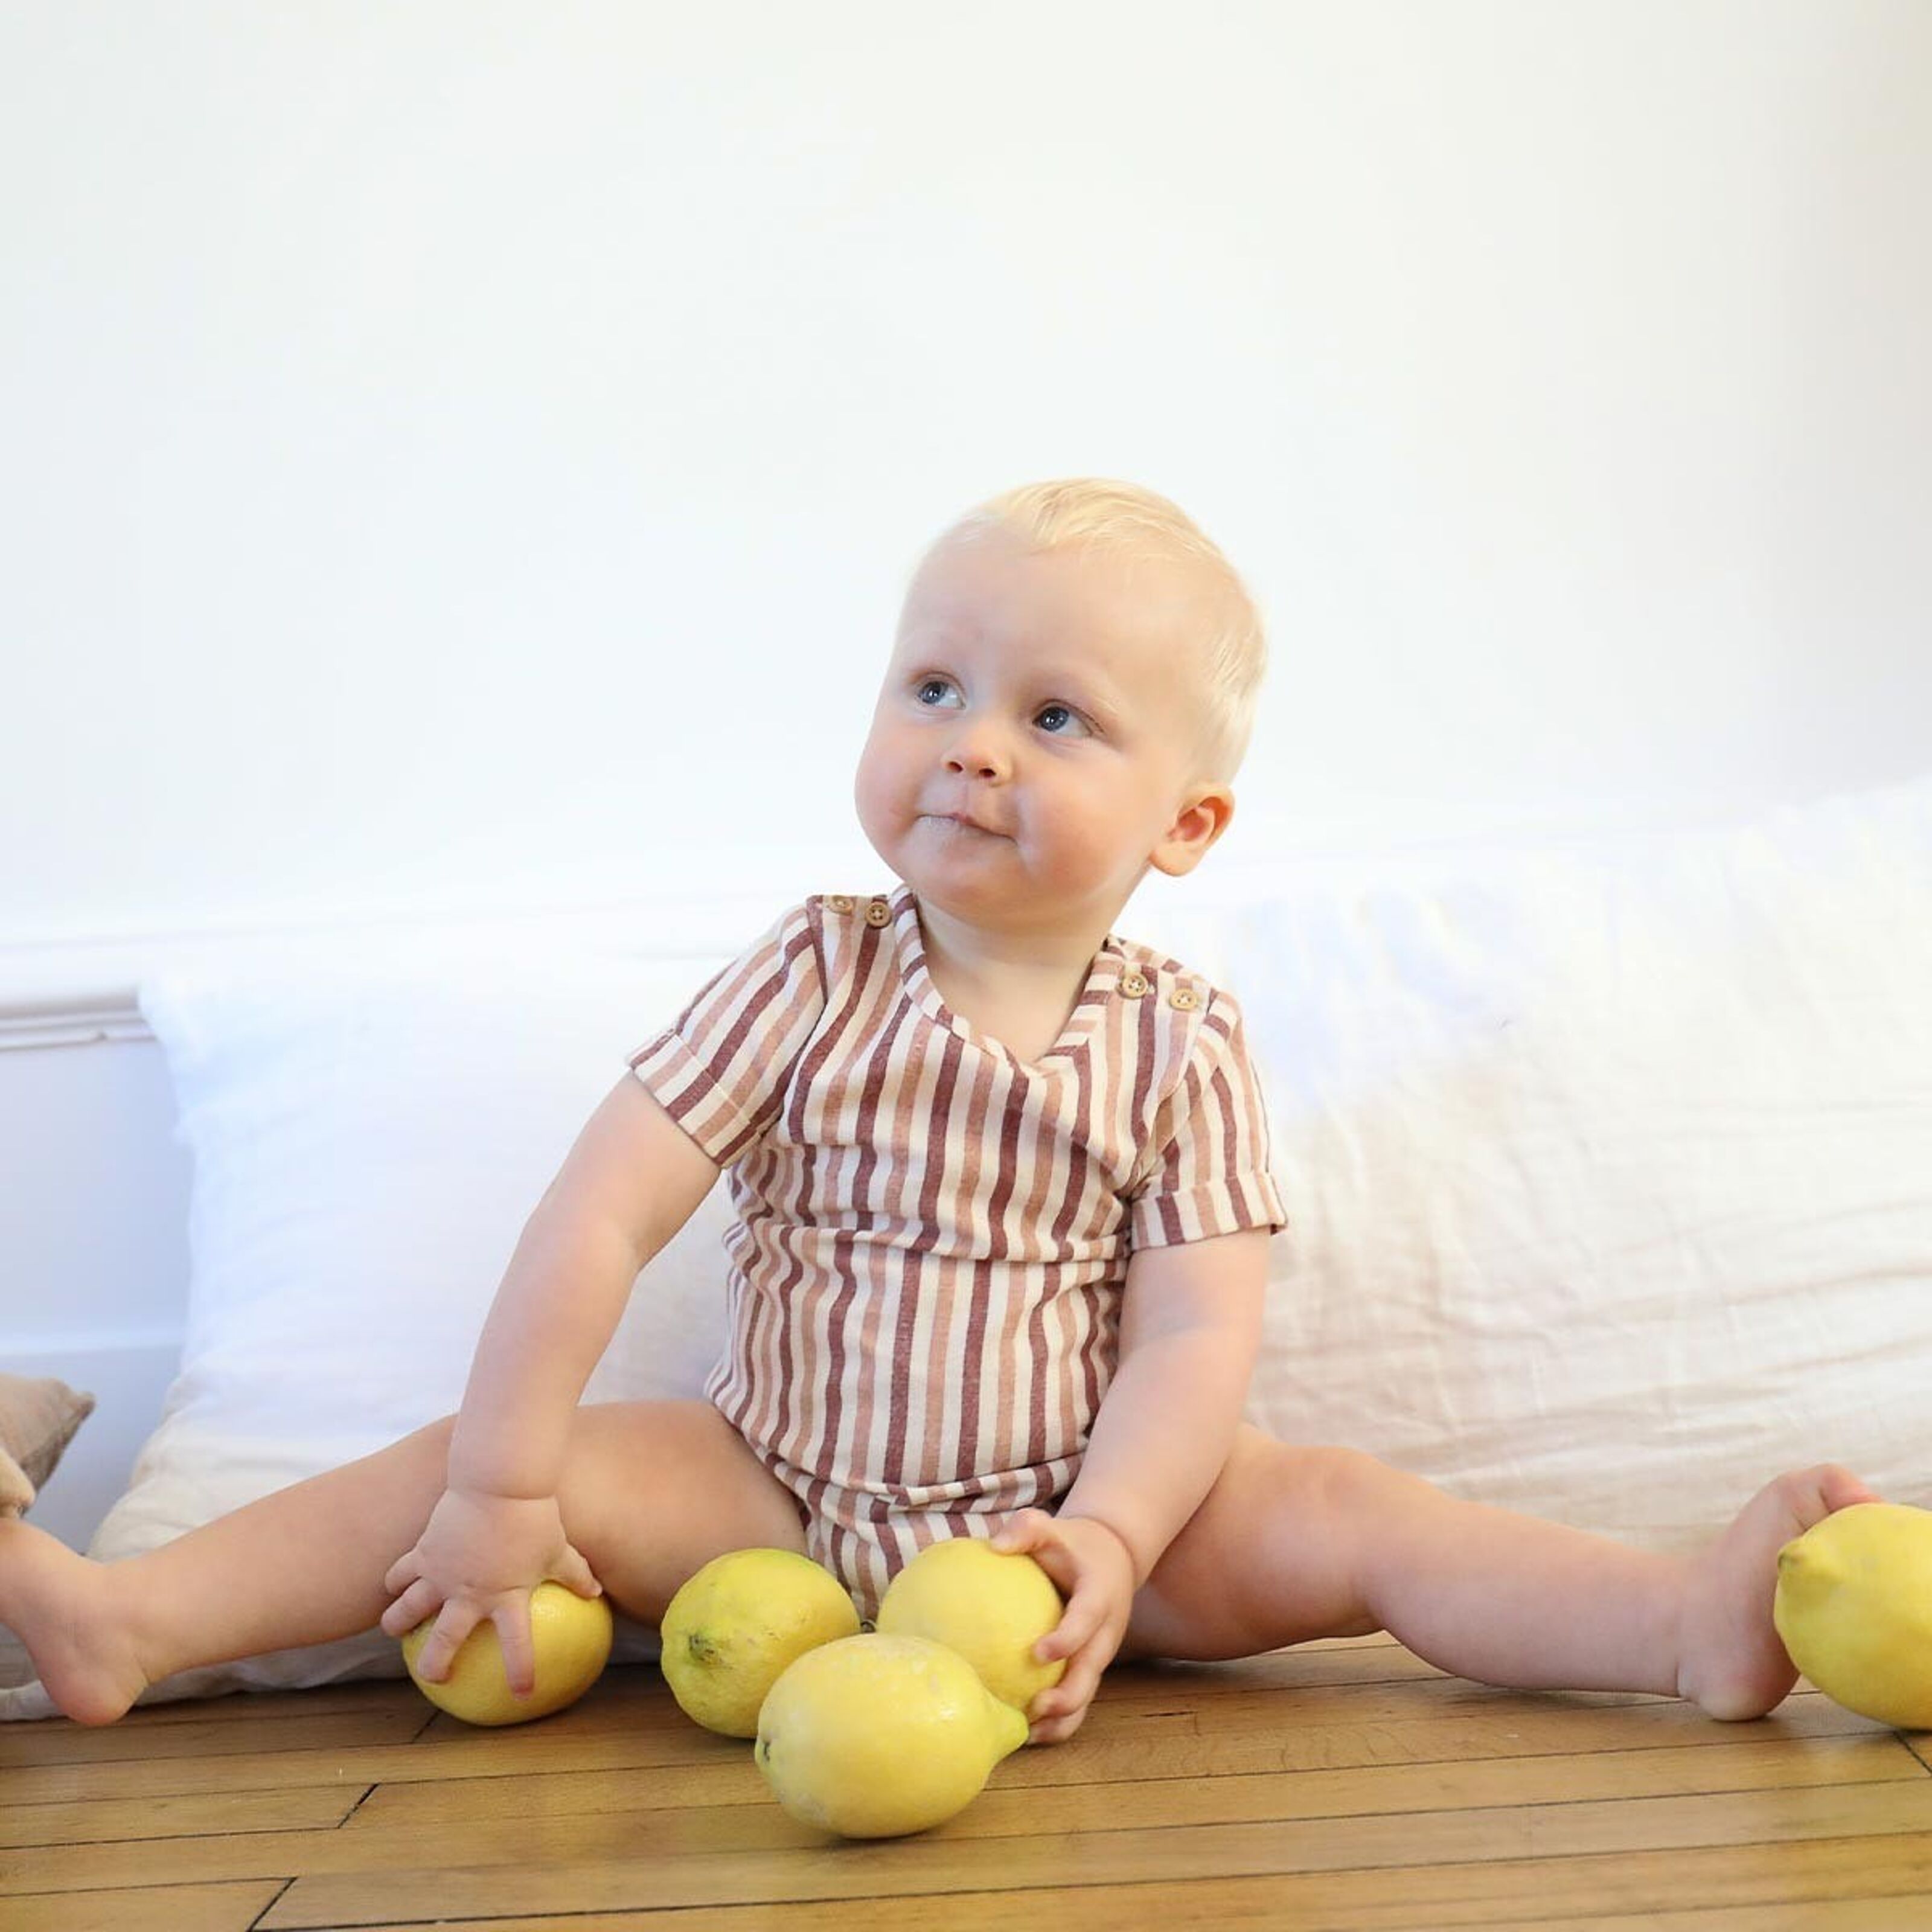 Vêtements enfants / bébés en coton bio - Lililotte, boutique de